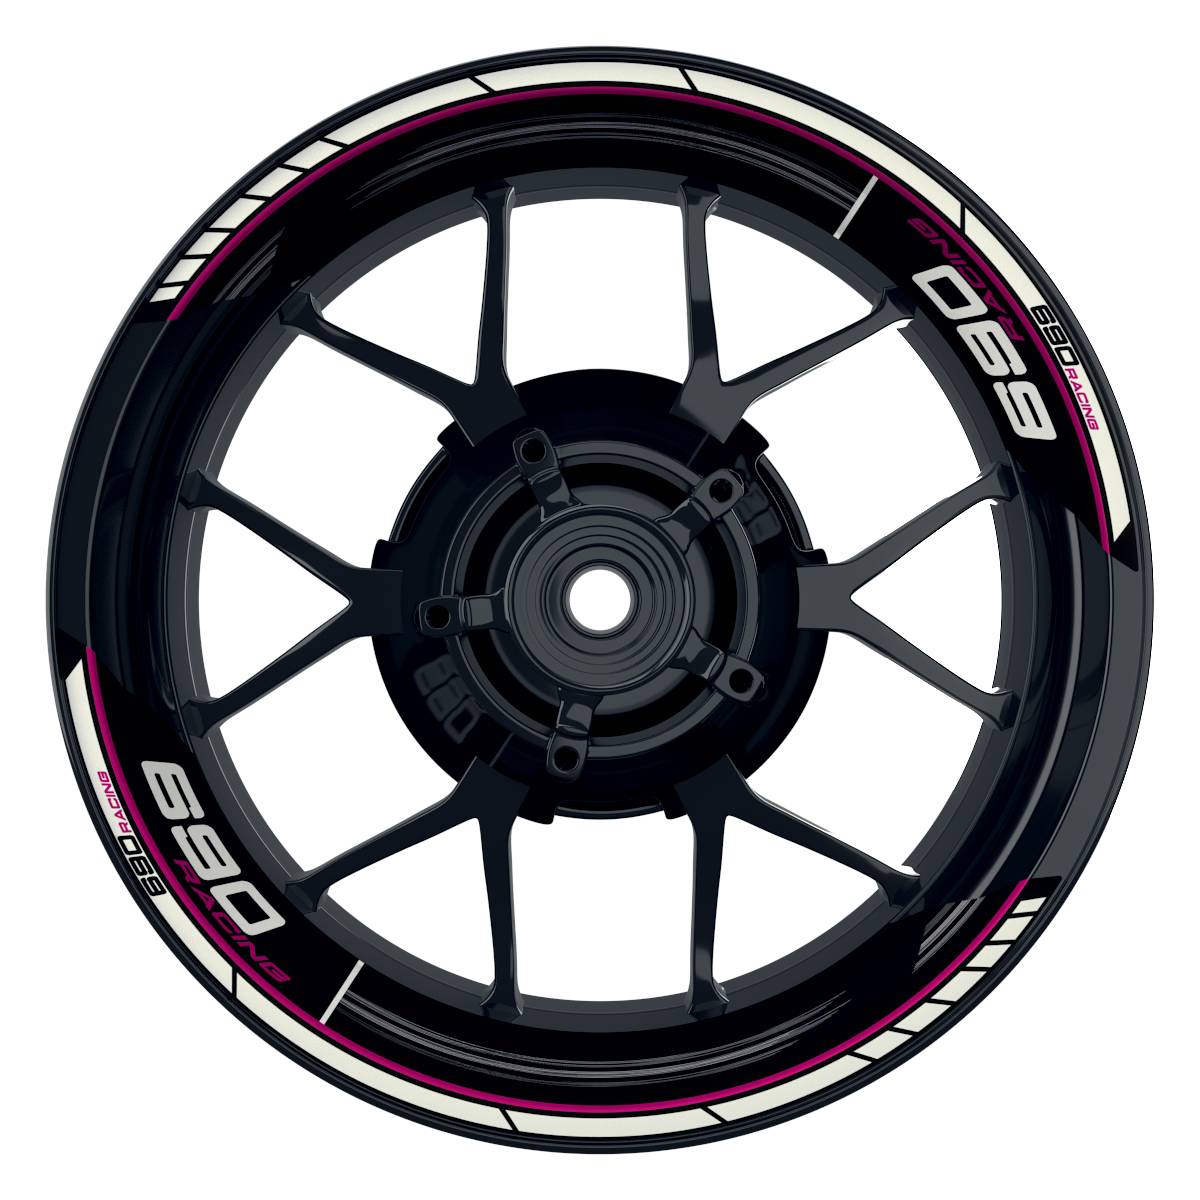 KTM Racing 690 Scratched schwarz pink Frontansicht